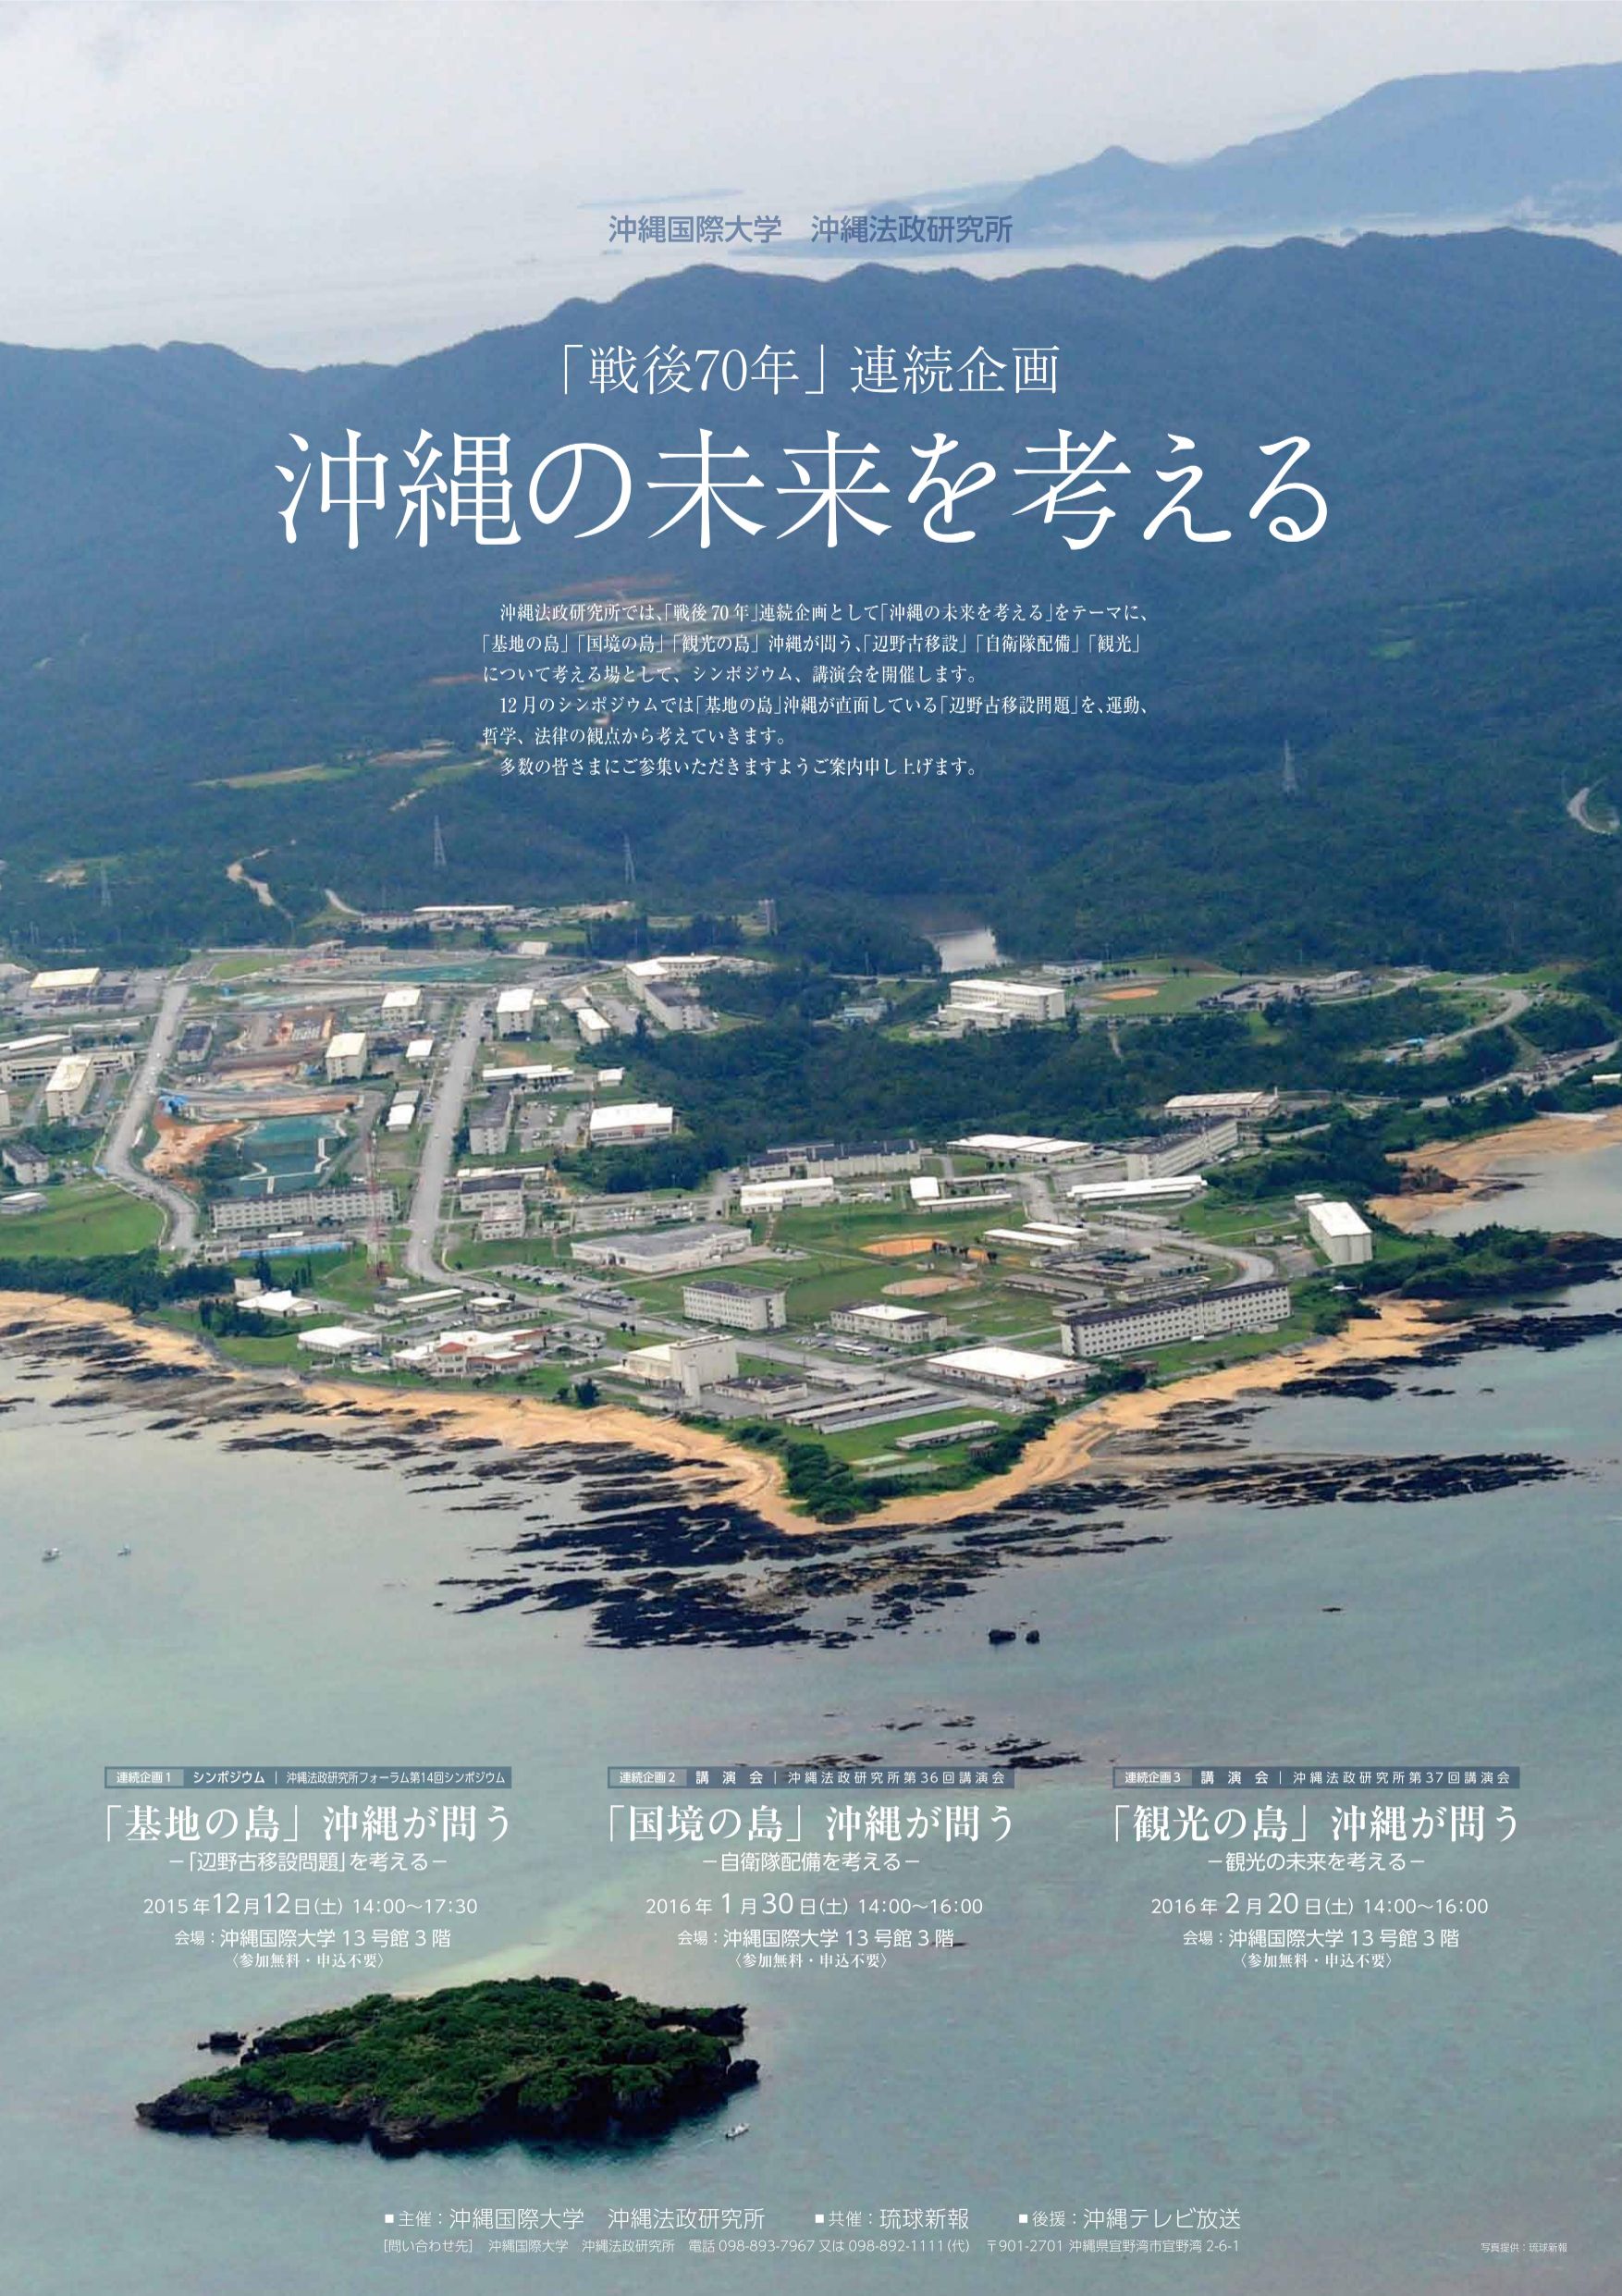 2015年 「戦後70年」連続企画 沖縄の未来を考える - 沖縄国際大学